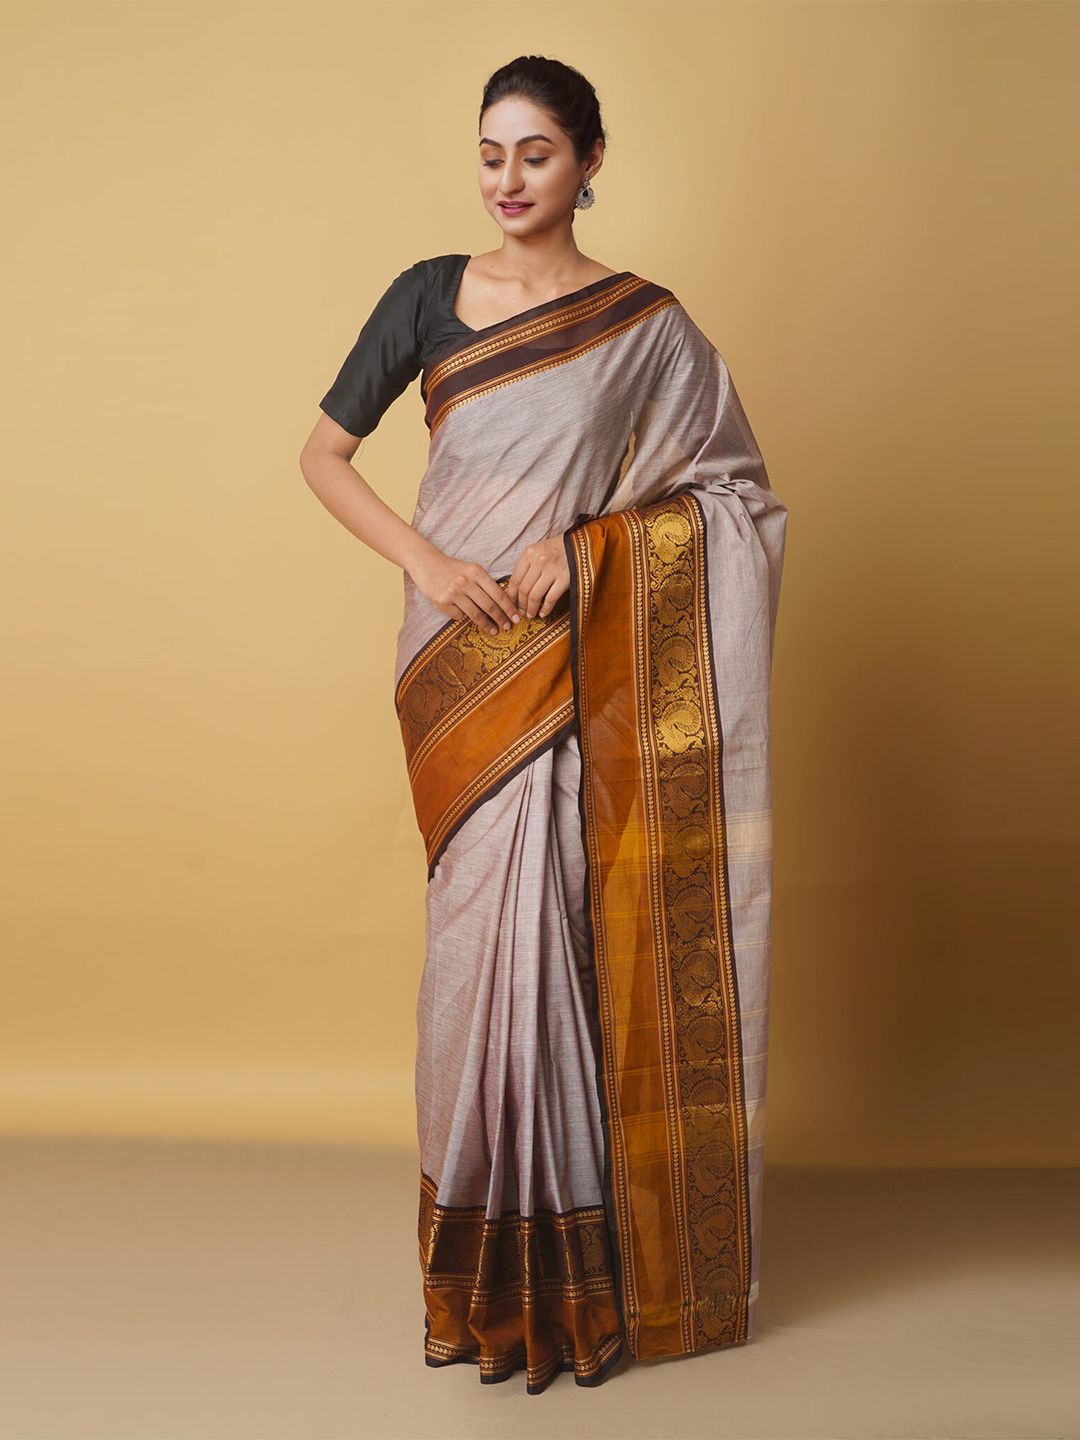 Unnati Silks Grey & Black Woven Design Pure Cotton Chettinad Saree Price in India